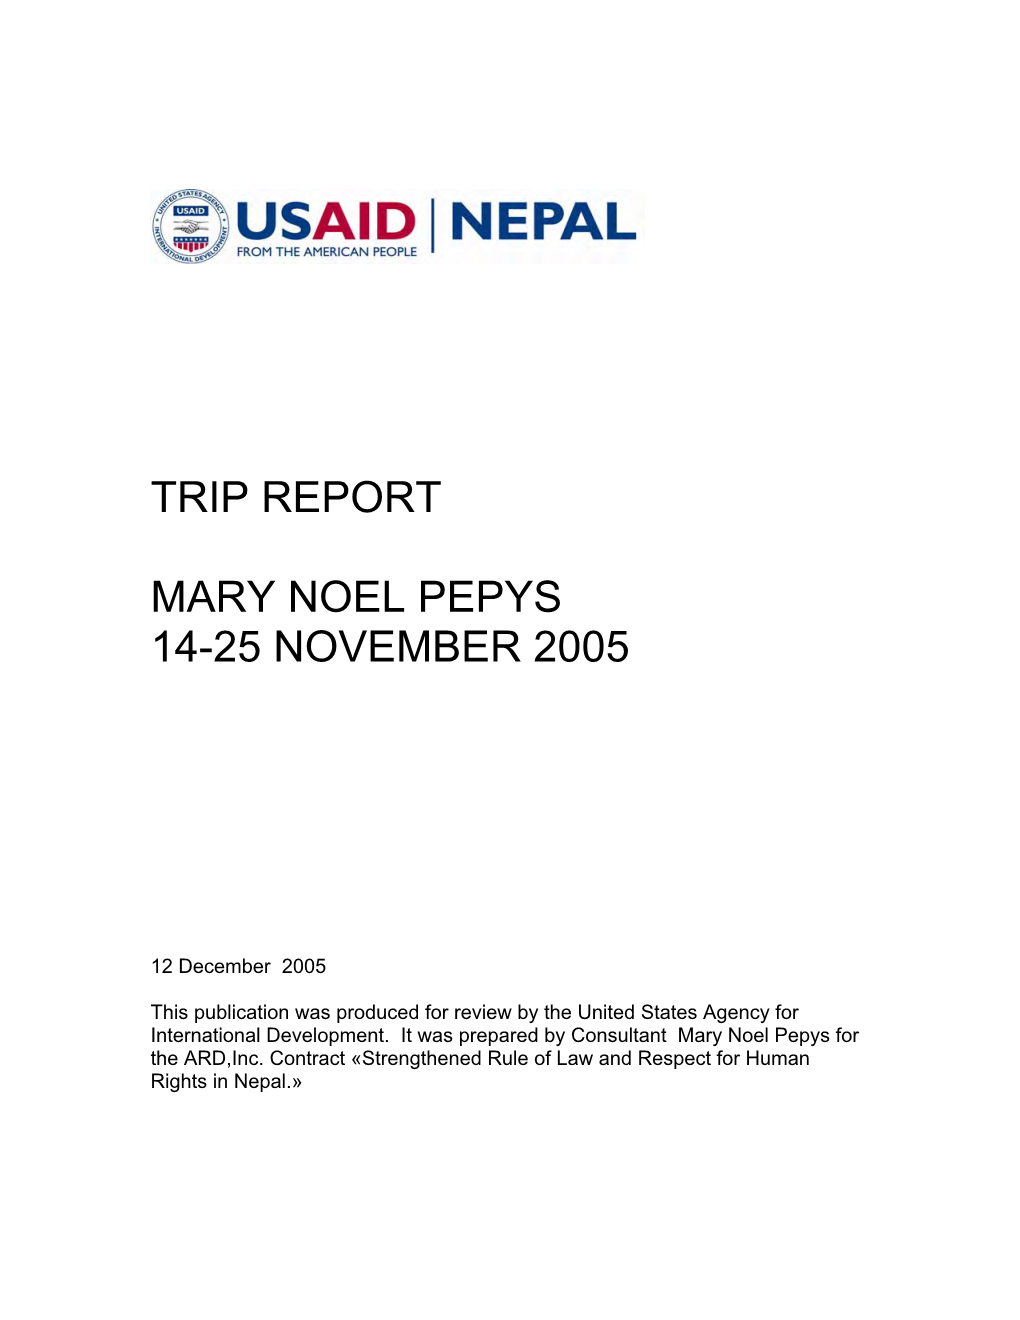 Trip Report Mary Noel Pepys 14-25 November 2005